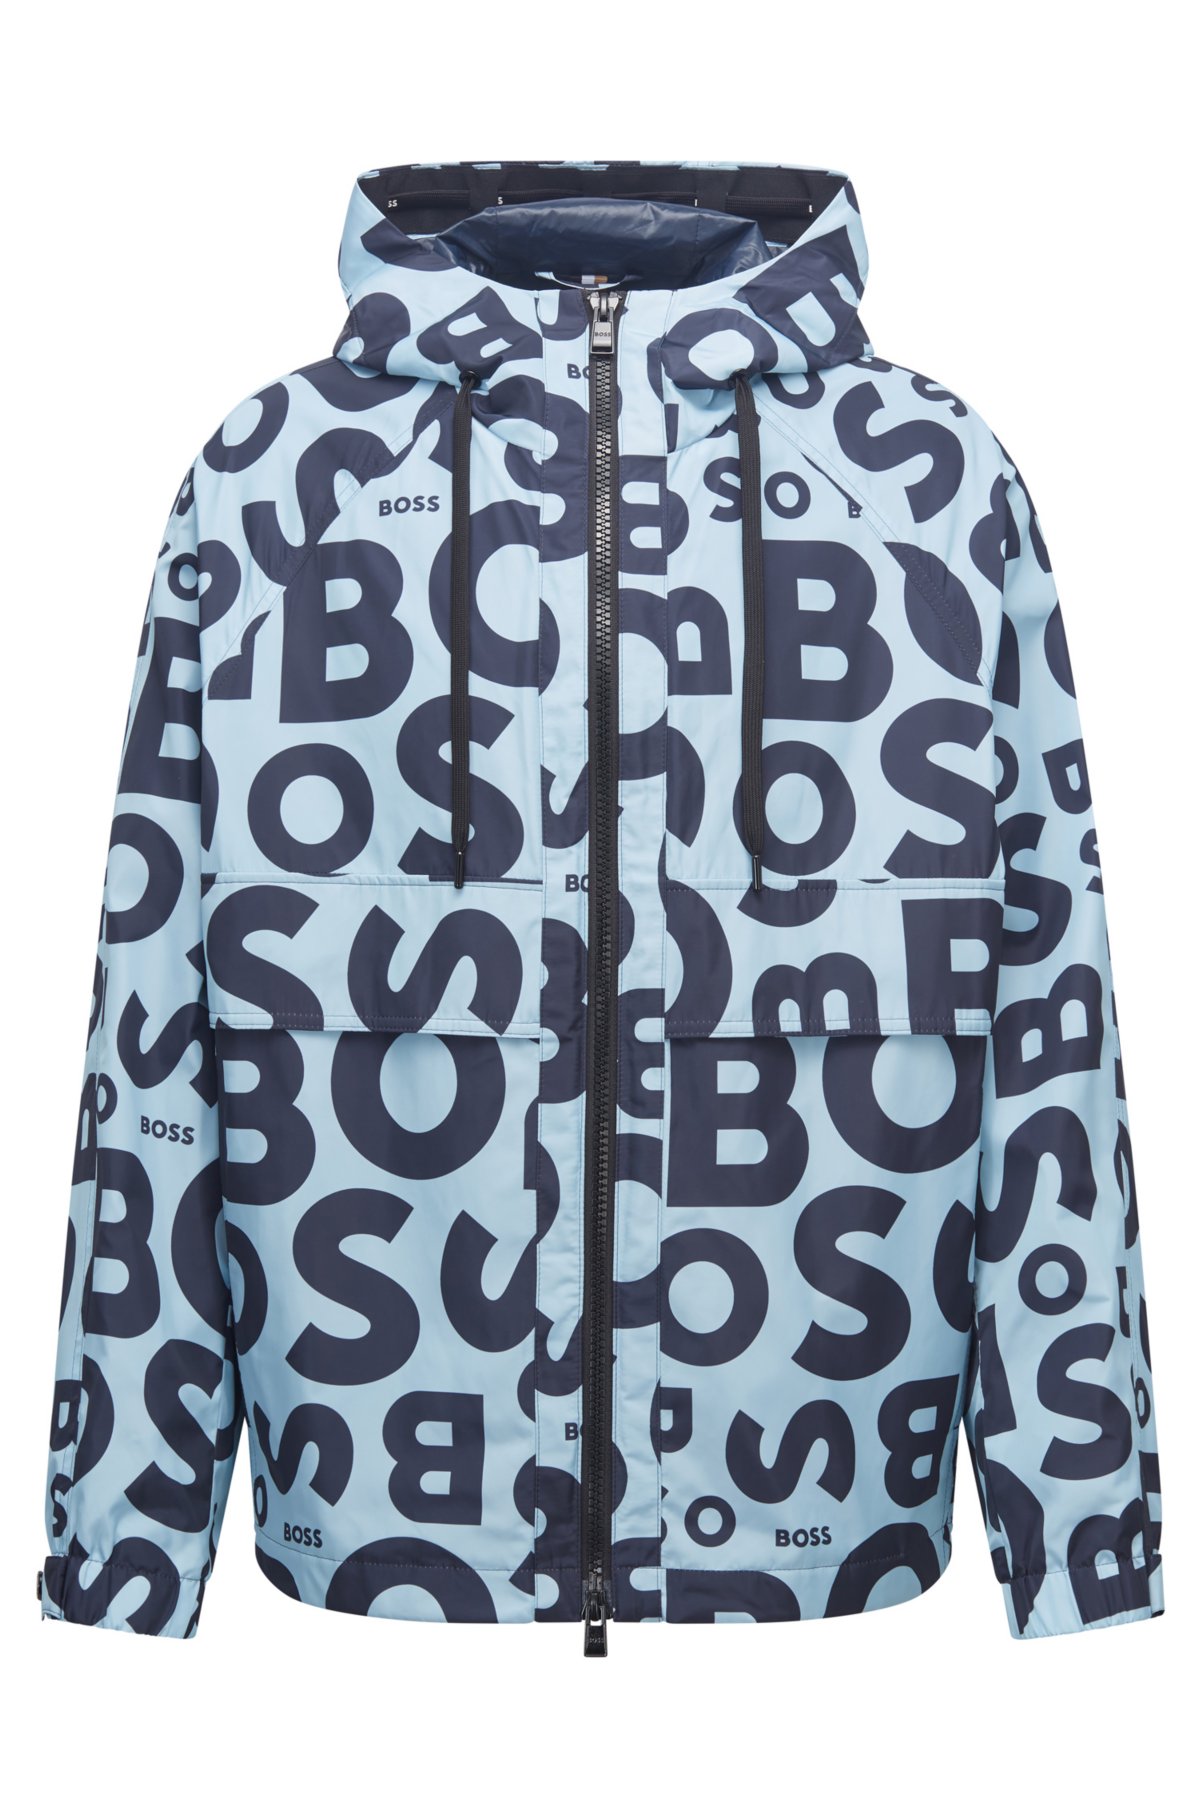 Støvet Literacy kompensere BOSS - Unpadded logo-print jacket with branded cords